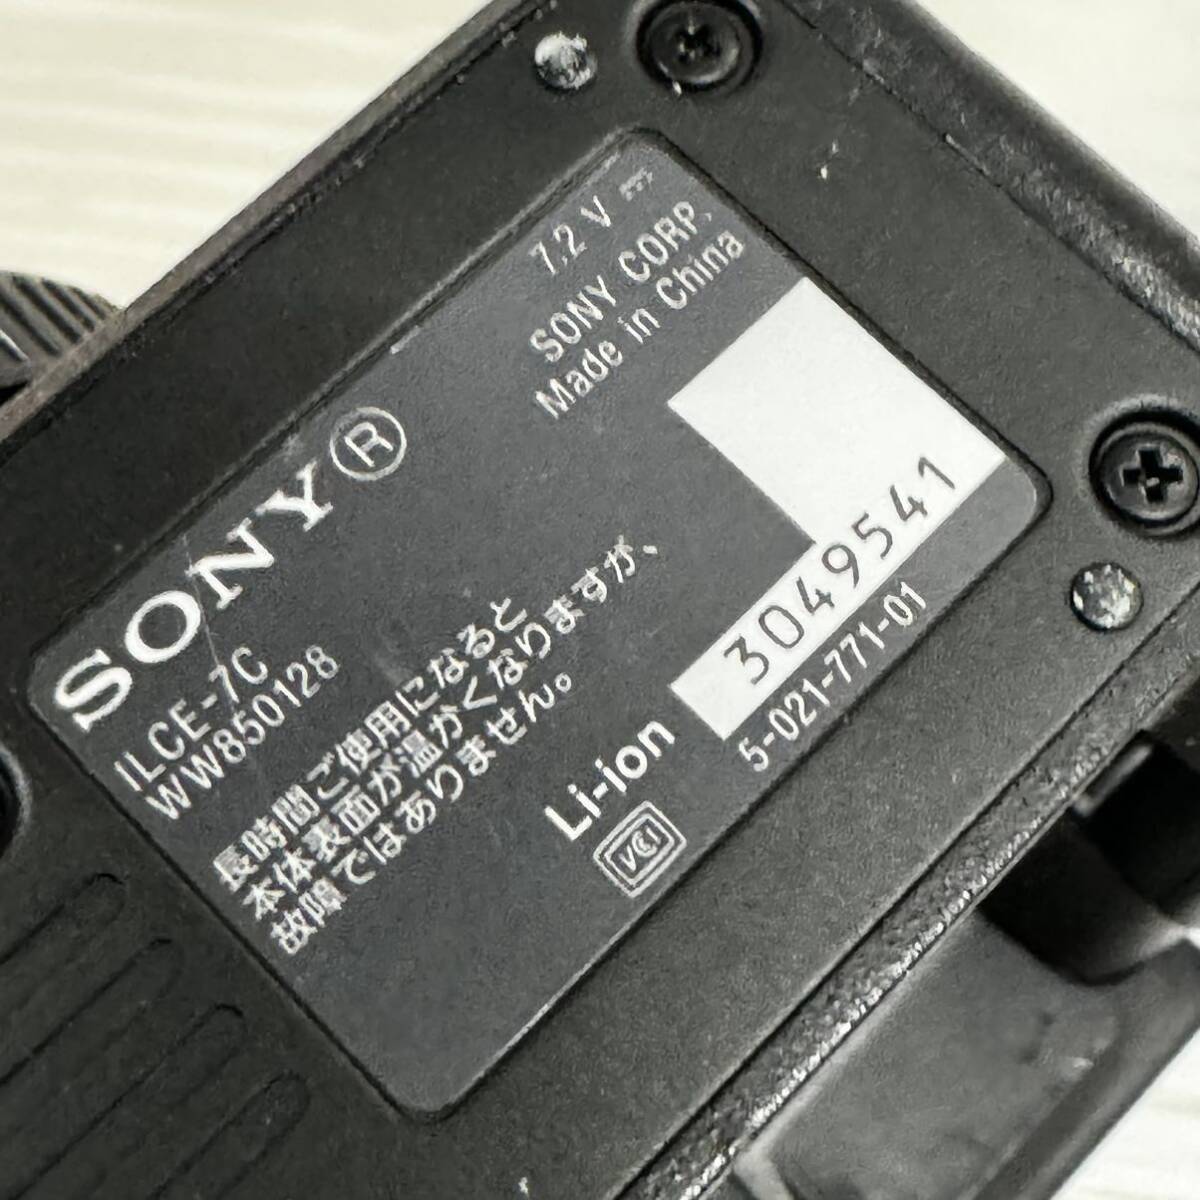 ソニー(SONY) フルサイズ ミラーレス一眼カメラ α7C ボディ(レンズなし) ILCE-7C ブラック デジカメ_画像7